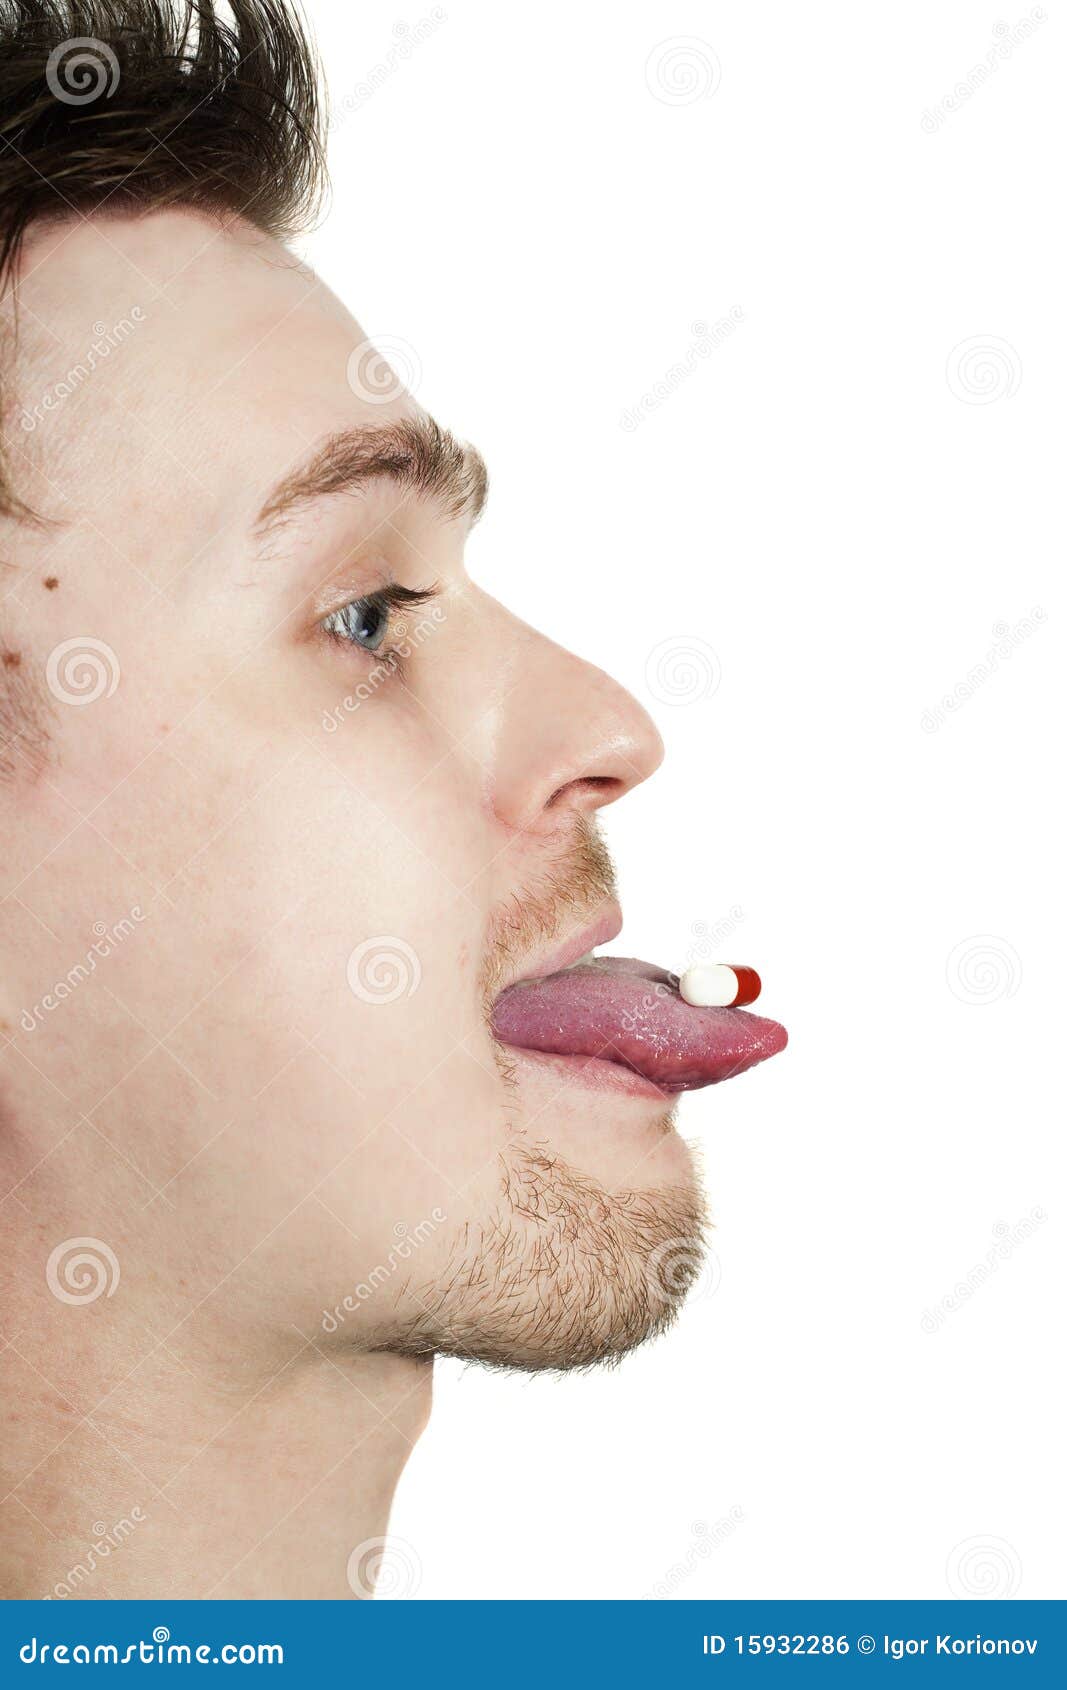 Открытый рот мужчины. Мужик с языком в профиль. Человек в профиль с высунутым языком. Мужчина высунул язык в профиль.